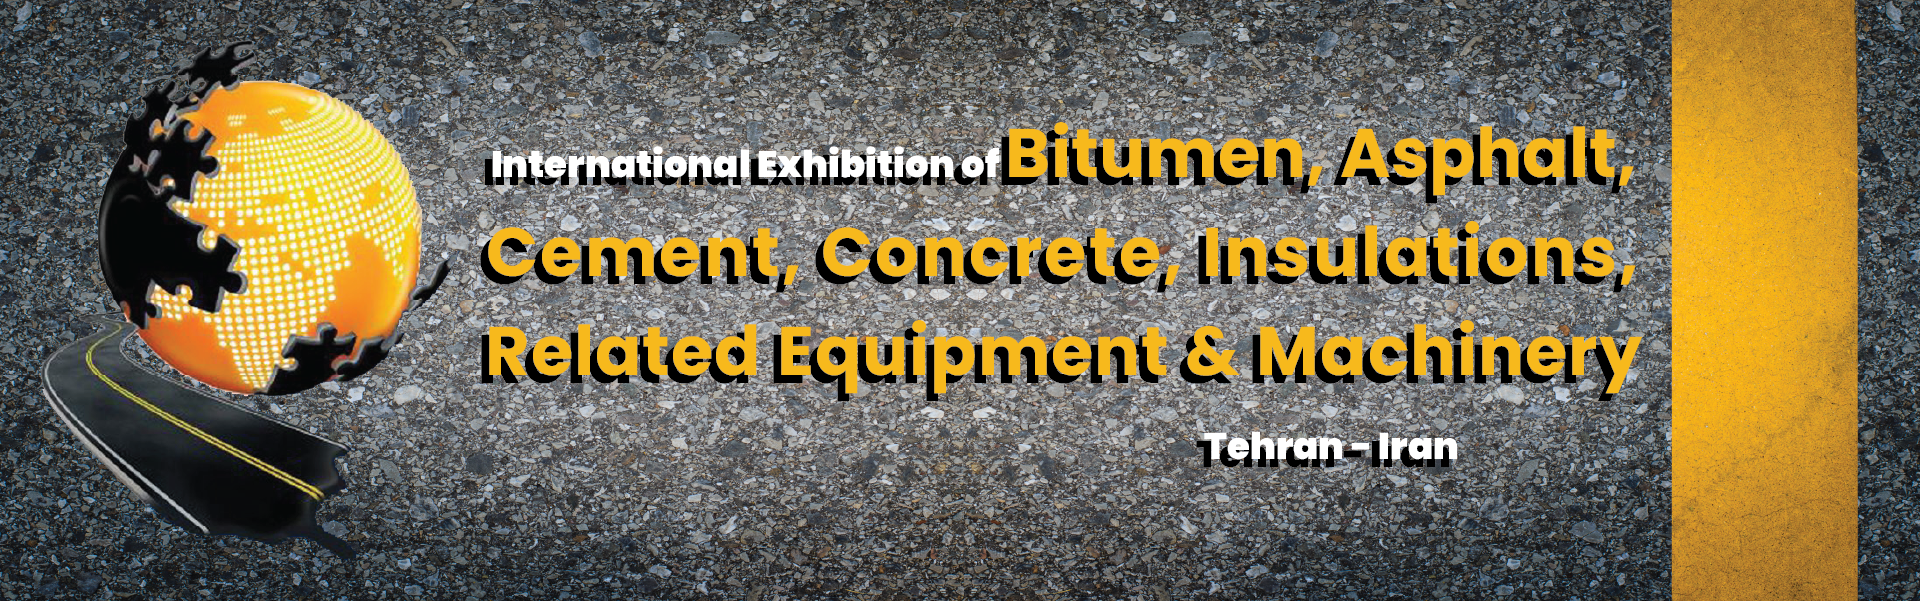 Bitumen Asphalt Cement and Concrete Exhibition Iran